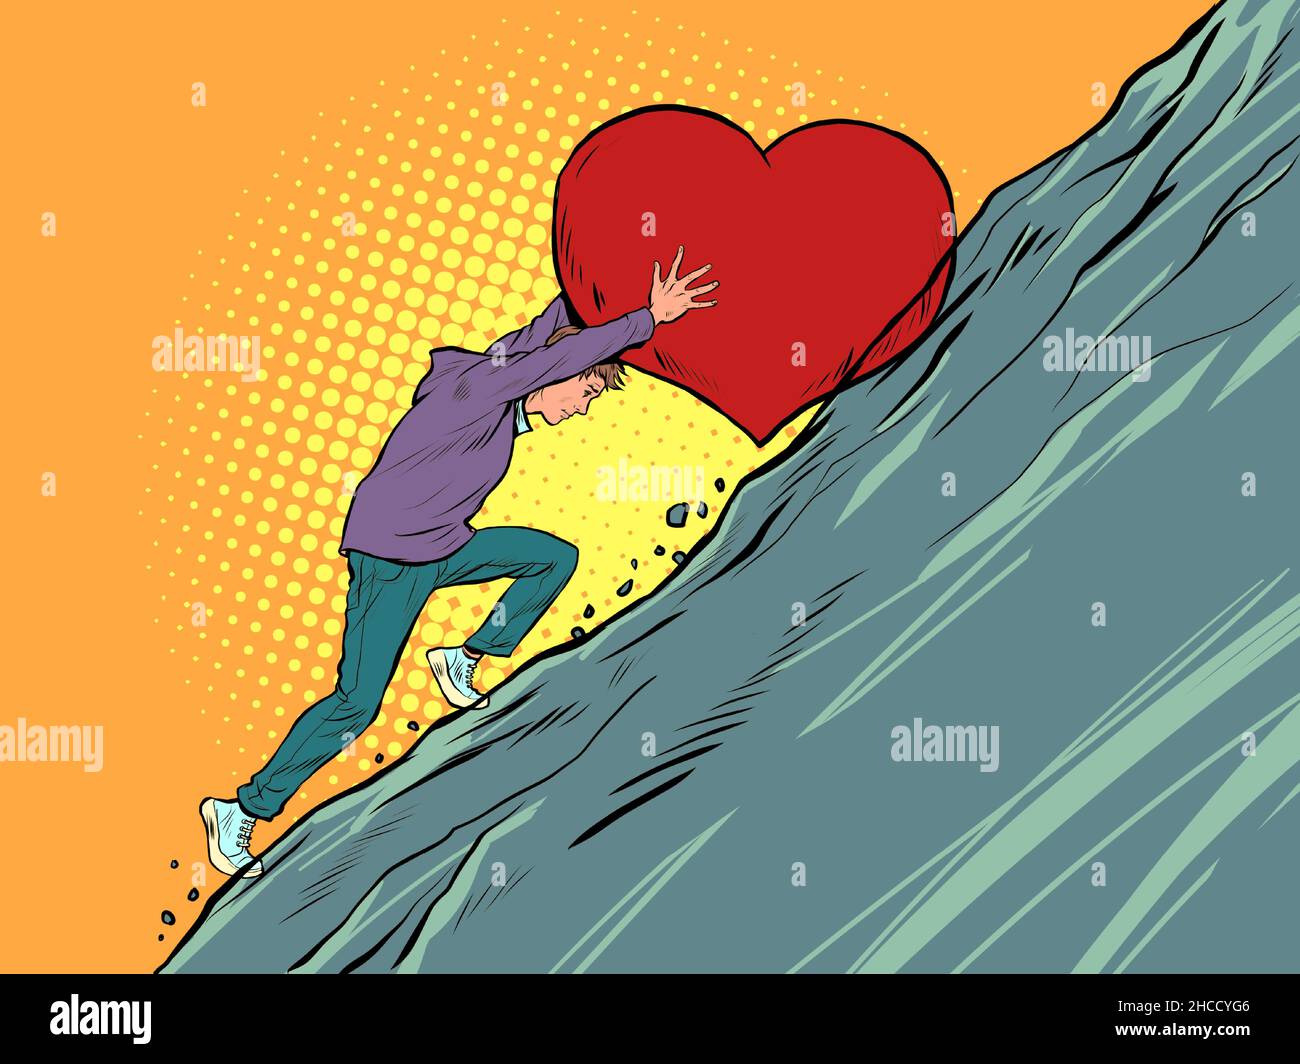 travail de sisyphean un amant croit en l'amour, roule un coeur de valentines en haut de la montagne Illustration de Vecteur